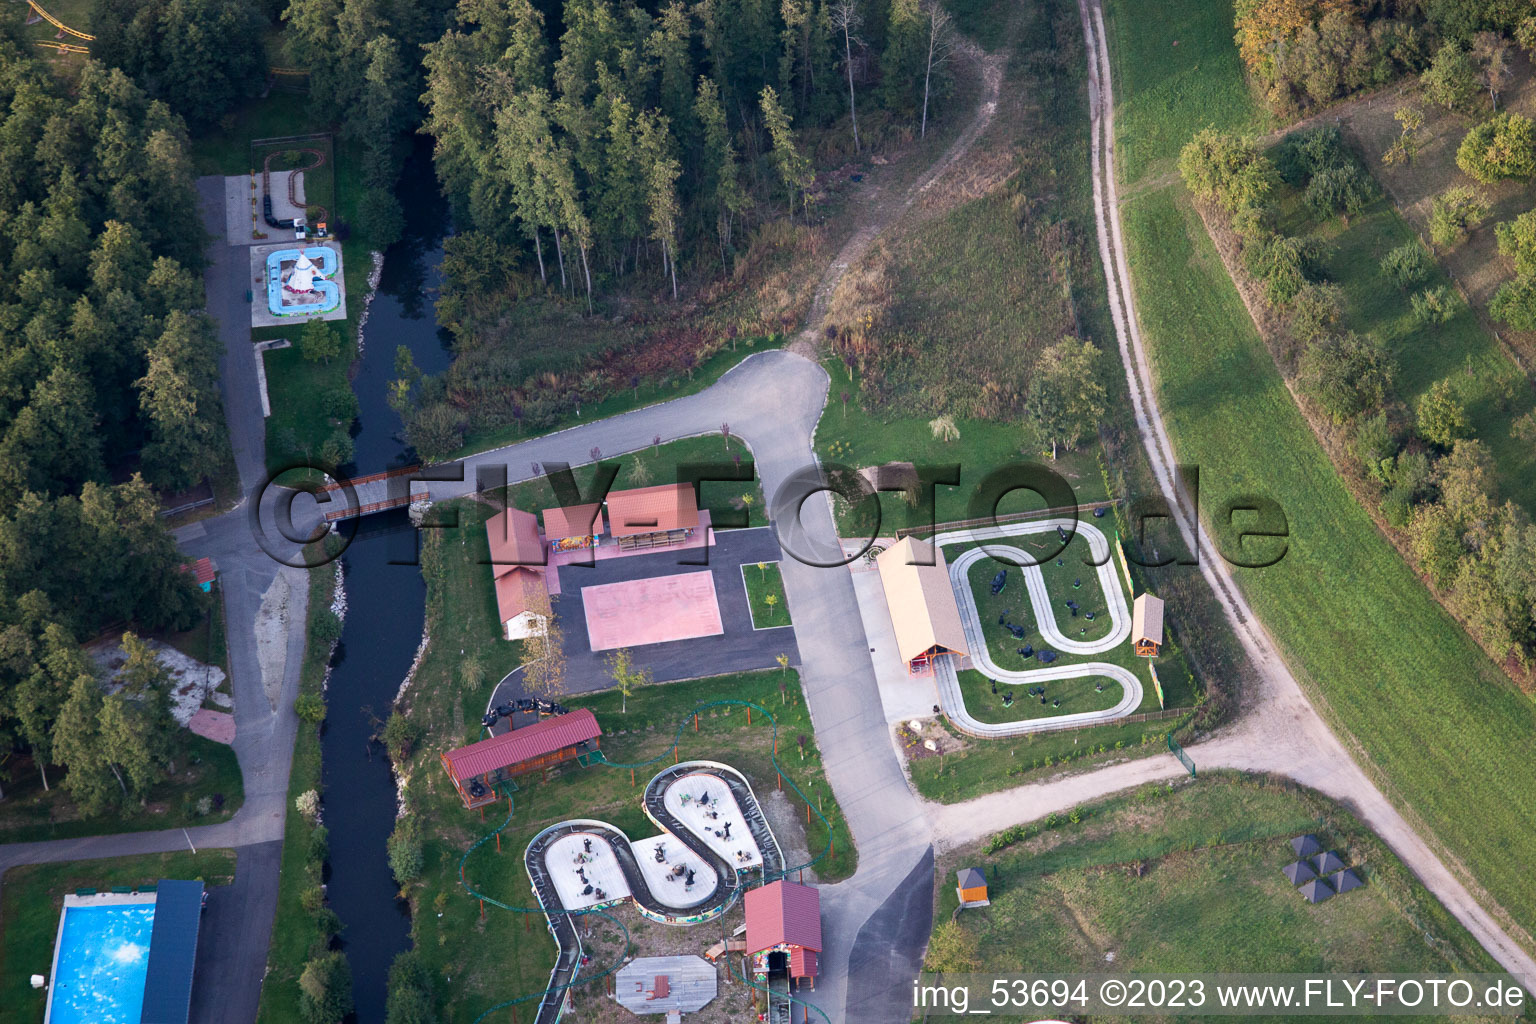 Gunstett dans le département Bas Rhin, France vu d'un drone